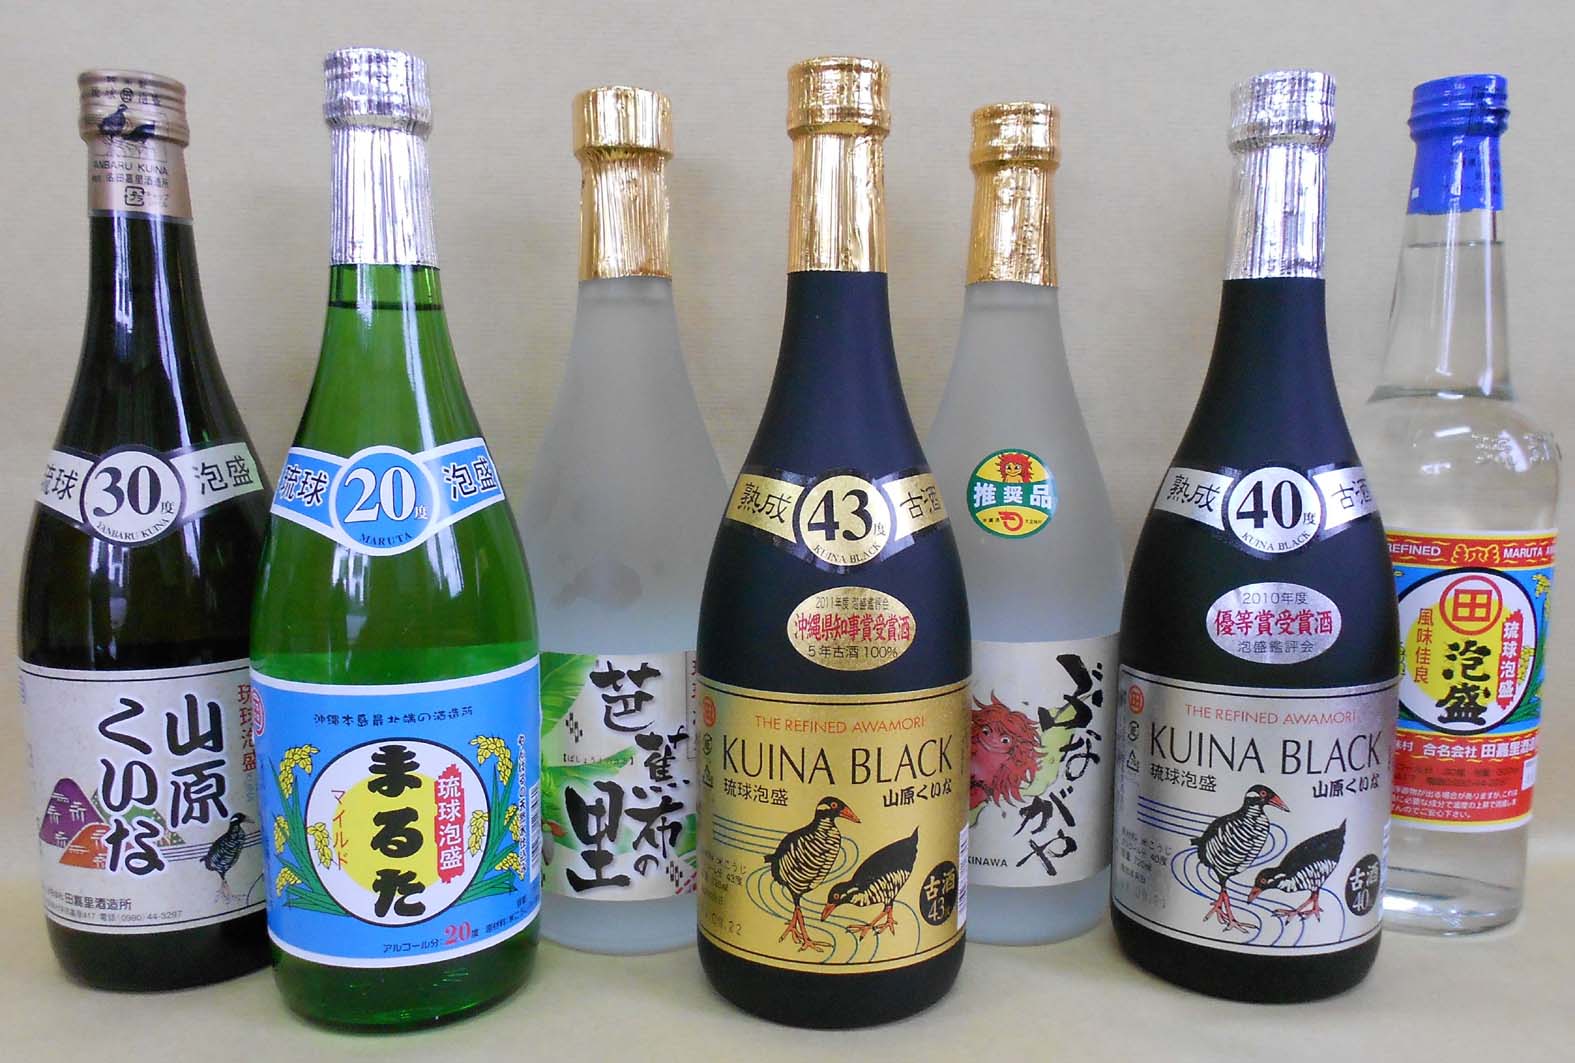 Японский алкогольный напиток. Японские алкогольные напитки. Японские слабоалкогольные напитки. Алкогольные напитки в Японии. Японские спиртные напитки названия.